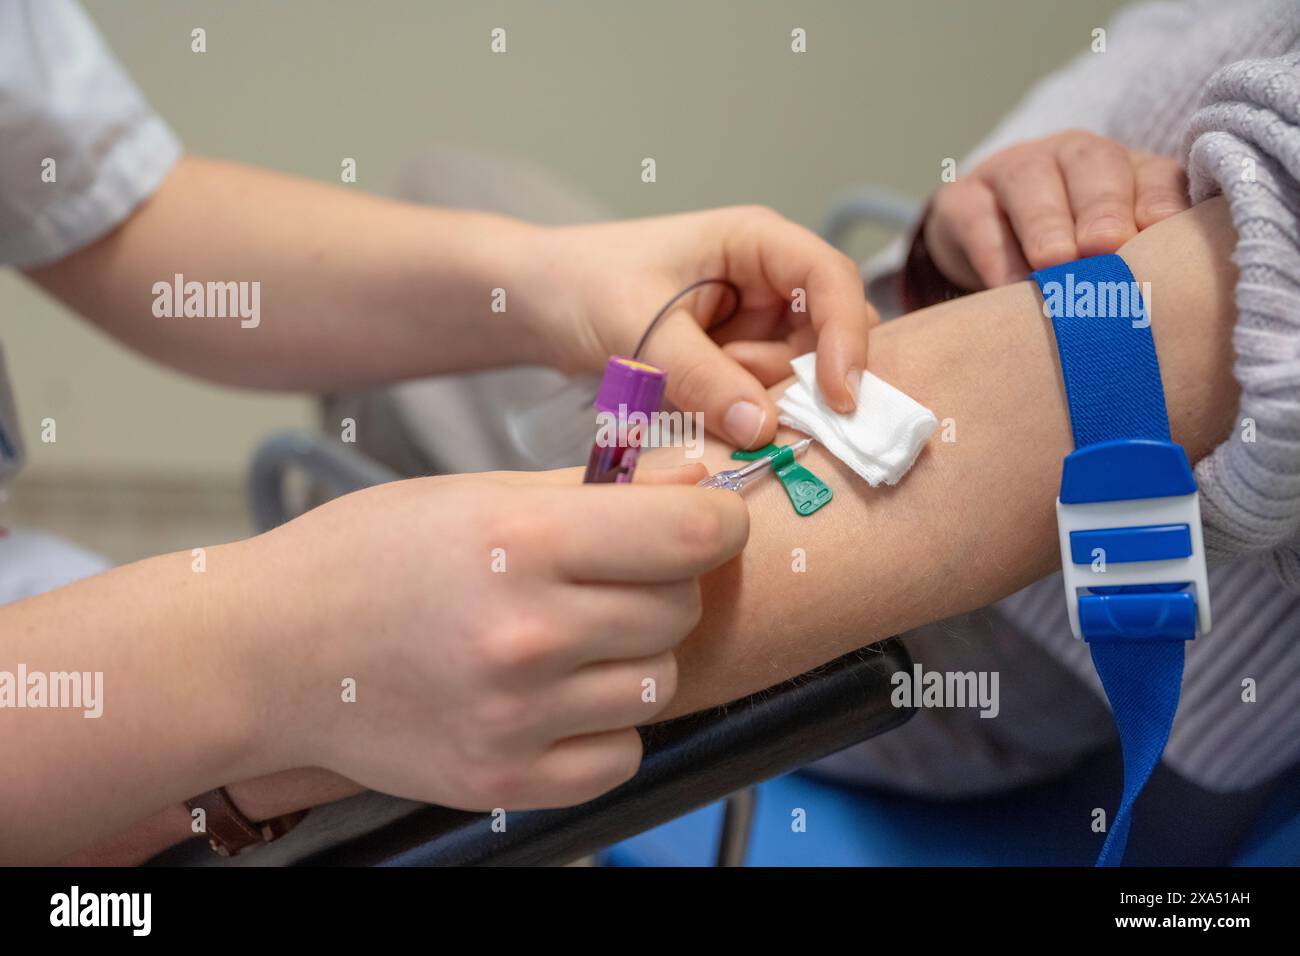 Un operatore sanitario preleva il sangue dal braccio di un paziente per un test medico in ambiente clinico. Foto Stock